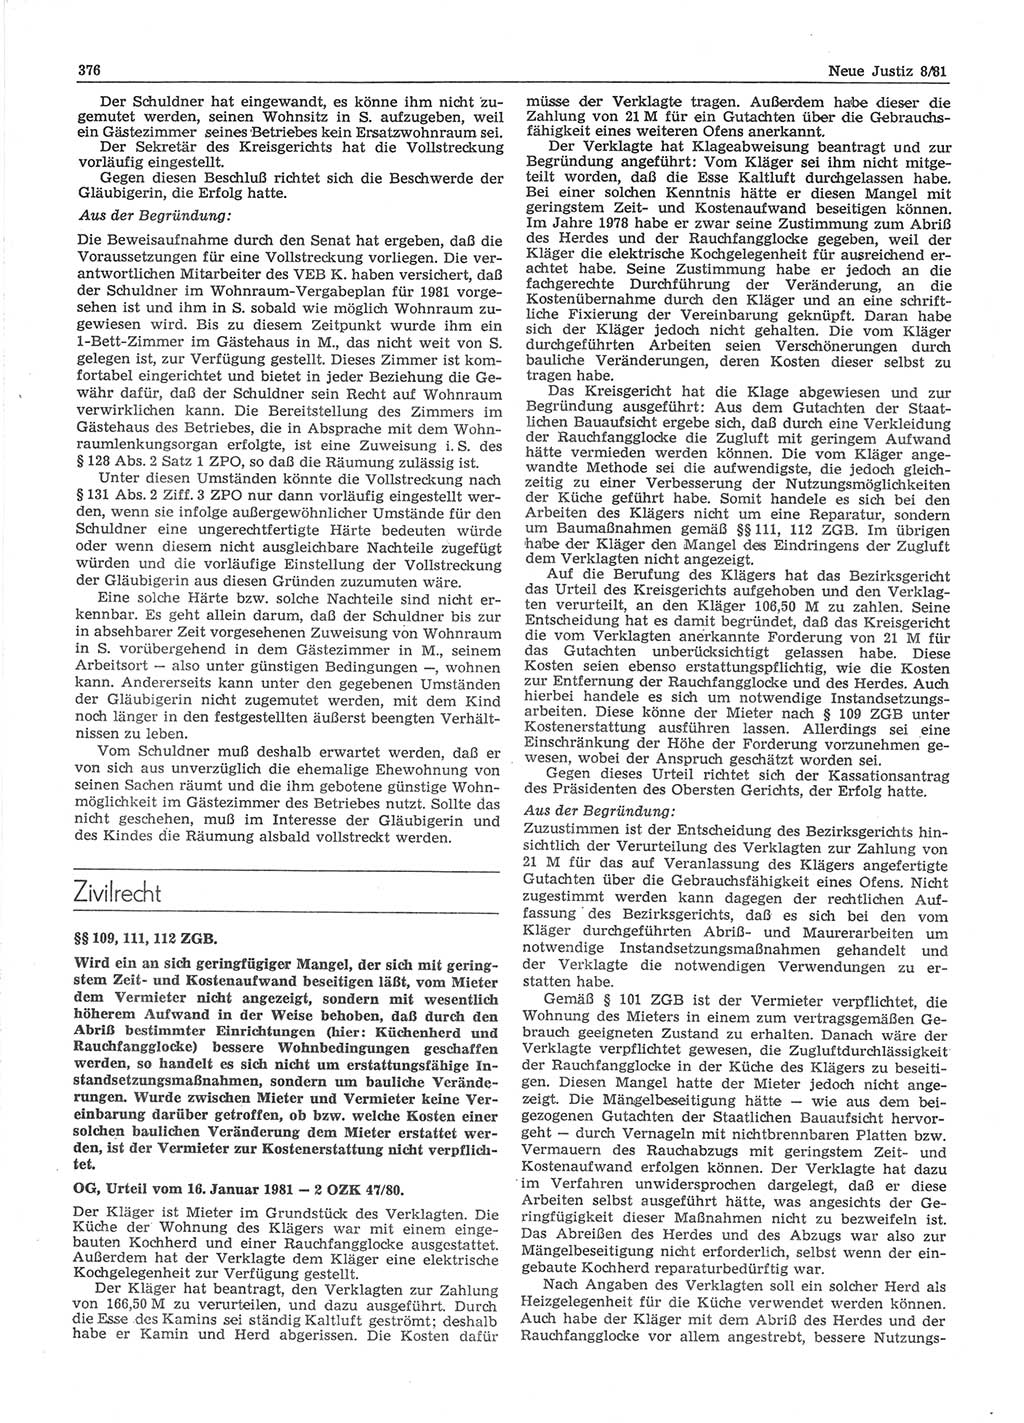 Neue Justiz (NJ), Zeitschrift für sozialistisches Recht und Gesetzlichkeit [Deutsche Demokratische Republik (DDR)], 35. Jahrgang 1981, Seite 376 (NJ DDR 1981, S. 376)